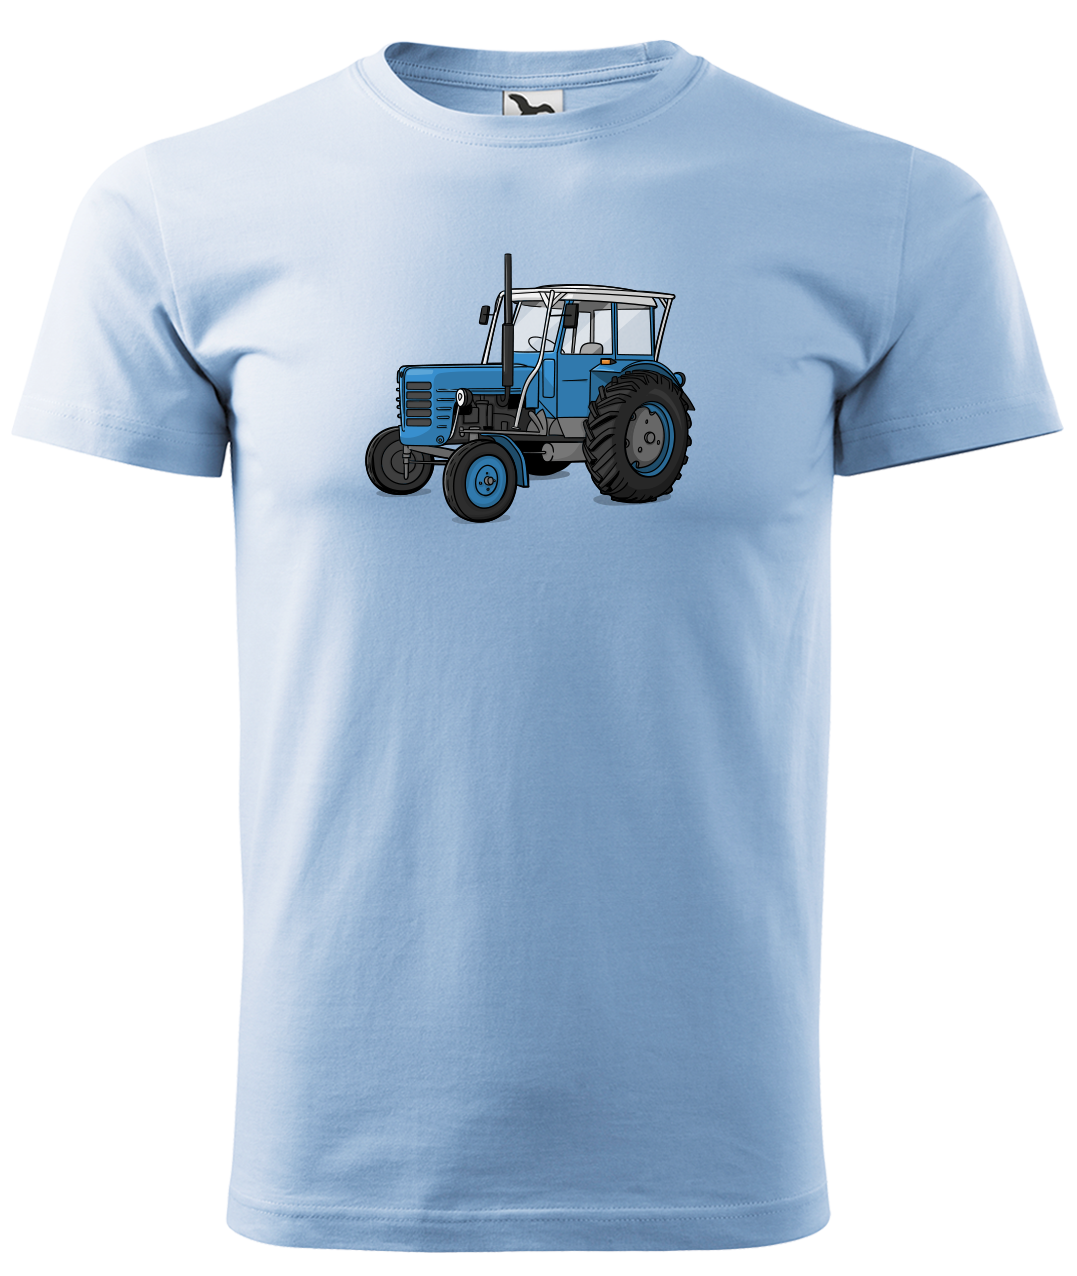 Dětské tričko s traktorem - Starý traktor Velikost: 8 let / 134 cm, Barva: Nebesky modrá (15)